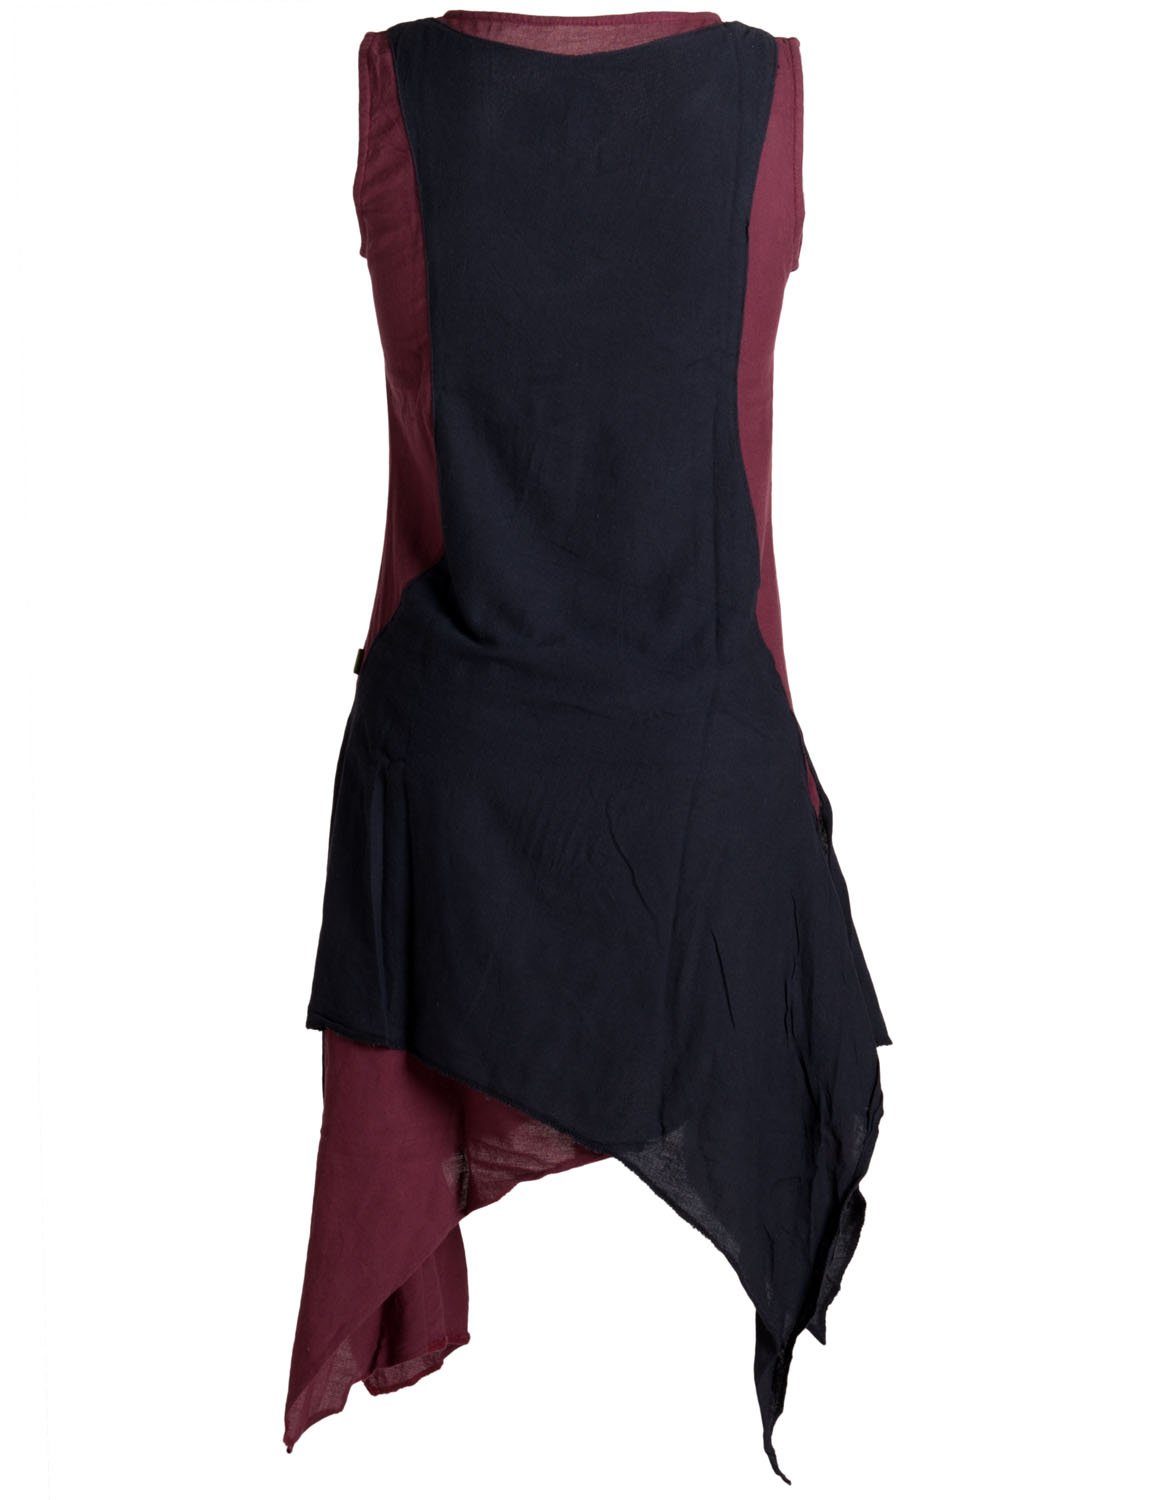 Hippie Boho, Kleid dunkelrot-schwarz Ärmelloses Sommerkleid Lagenlook Style Baumwolle Vishes handgewebte Goa,